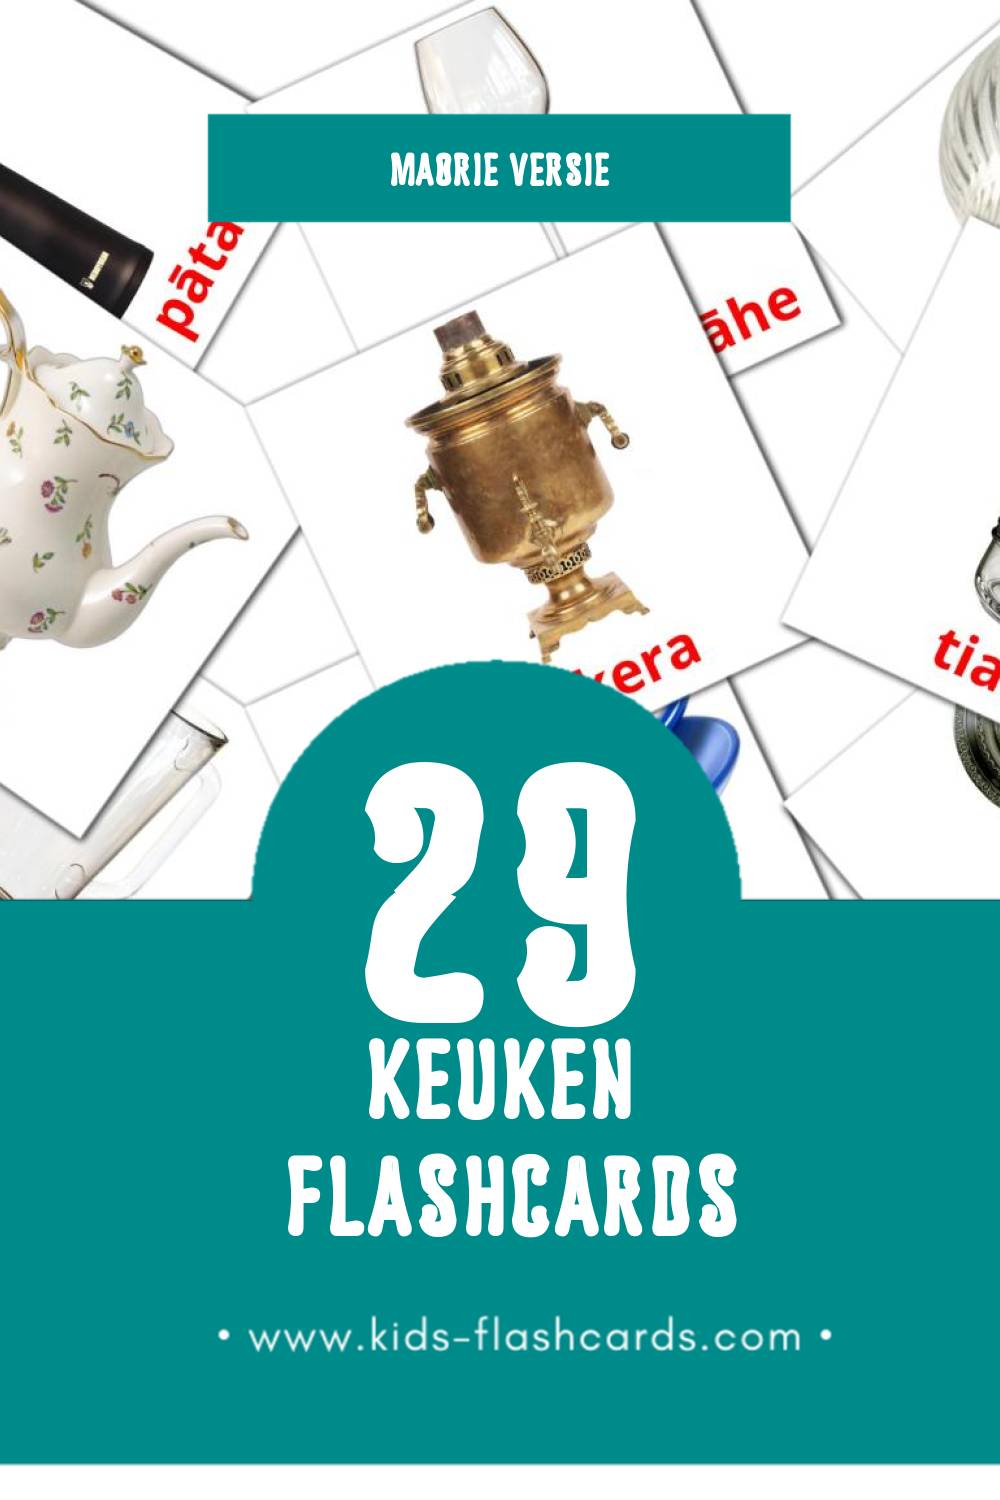 Visuele Kīhini Flashcards voor Kleuters (29 kaarten in het Maori)